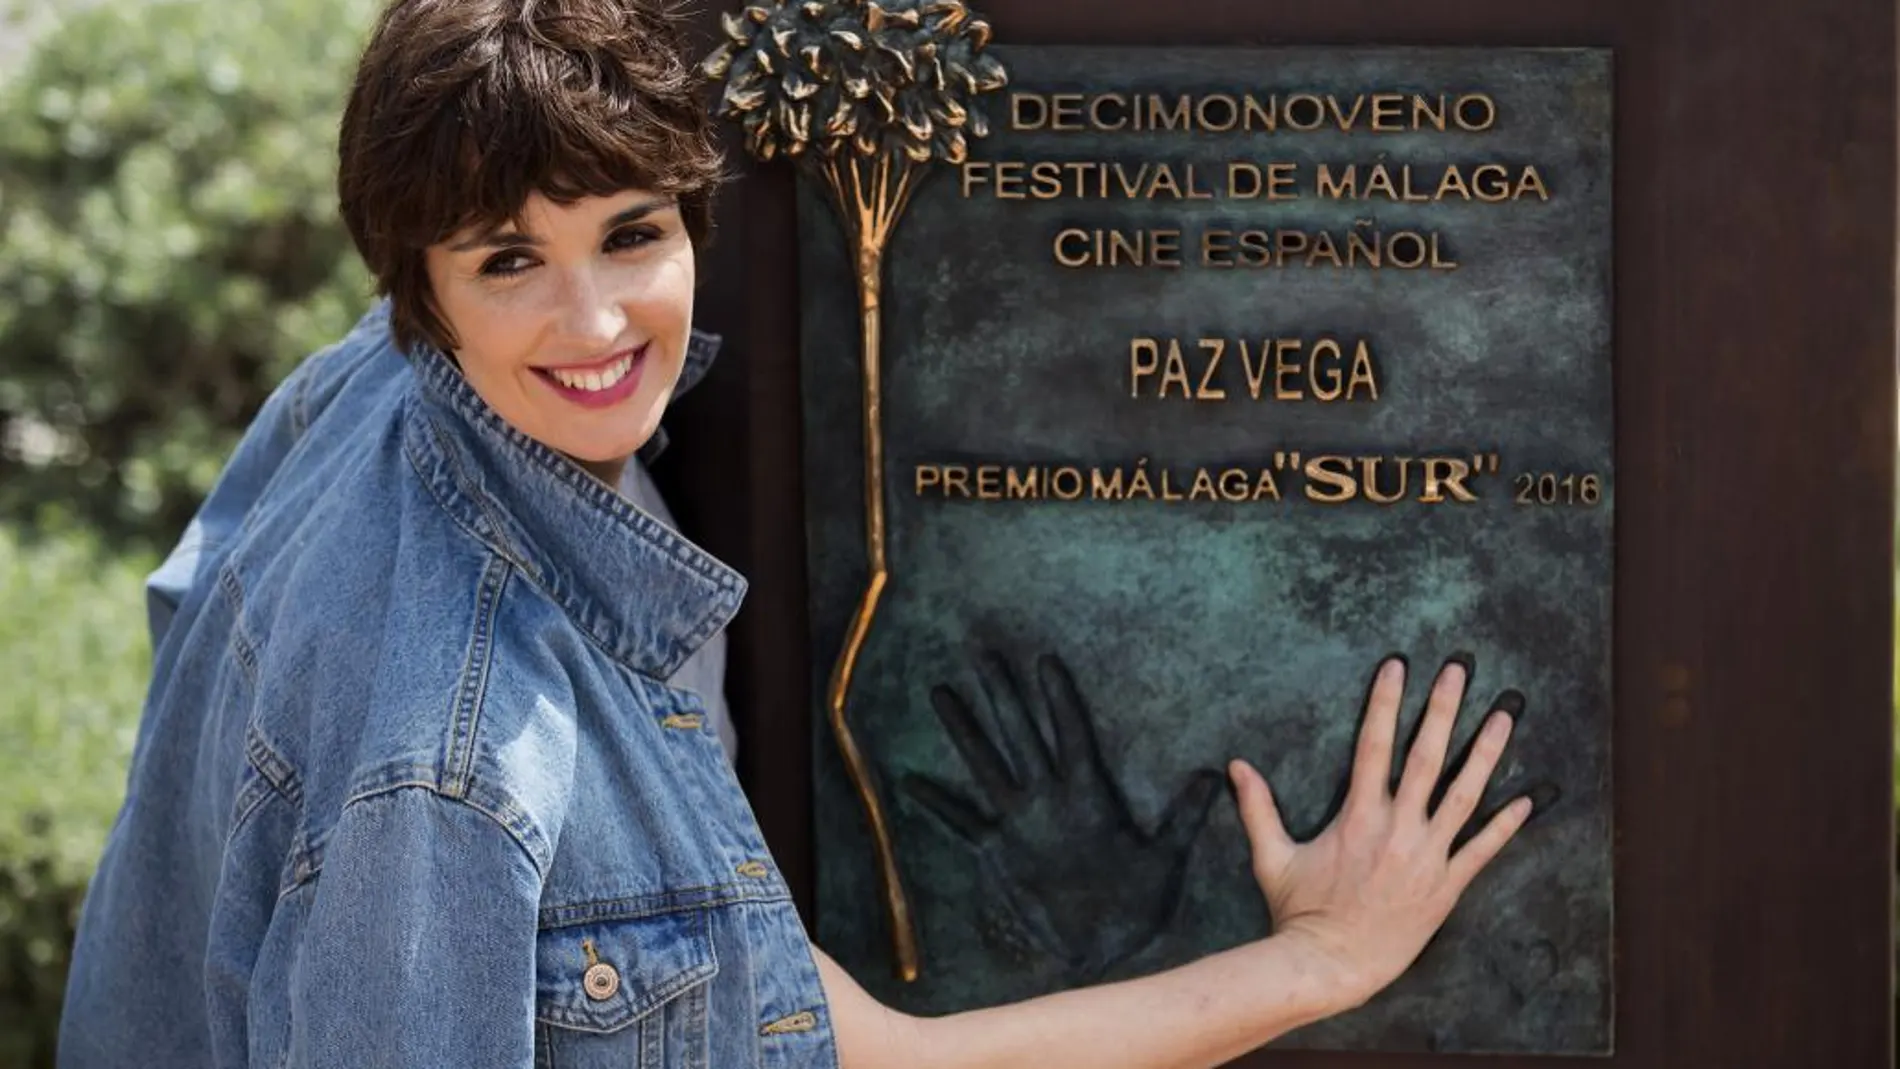 La actriz Paz Vega posa en el monolito que lleva su nombre